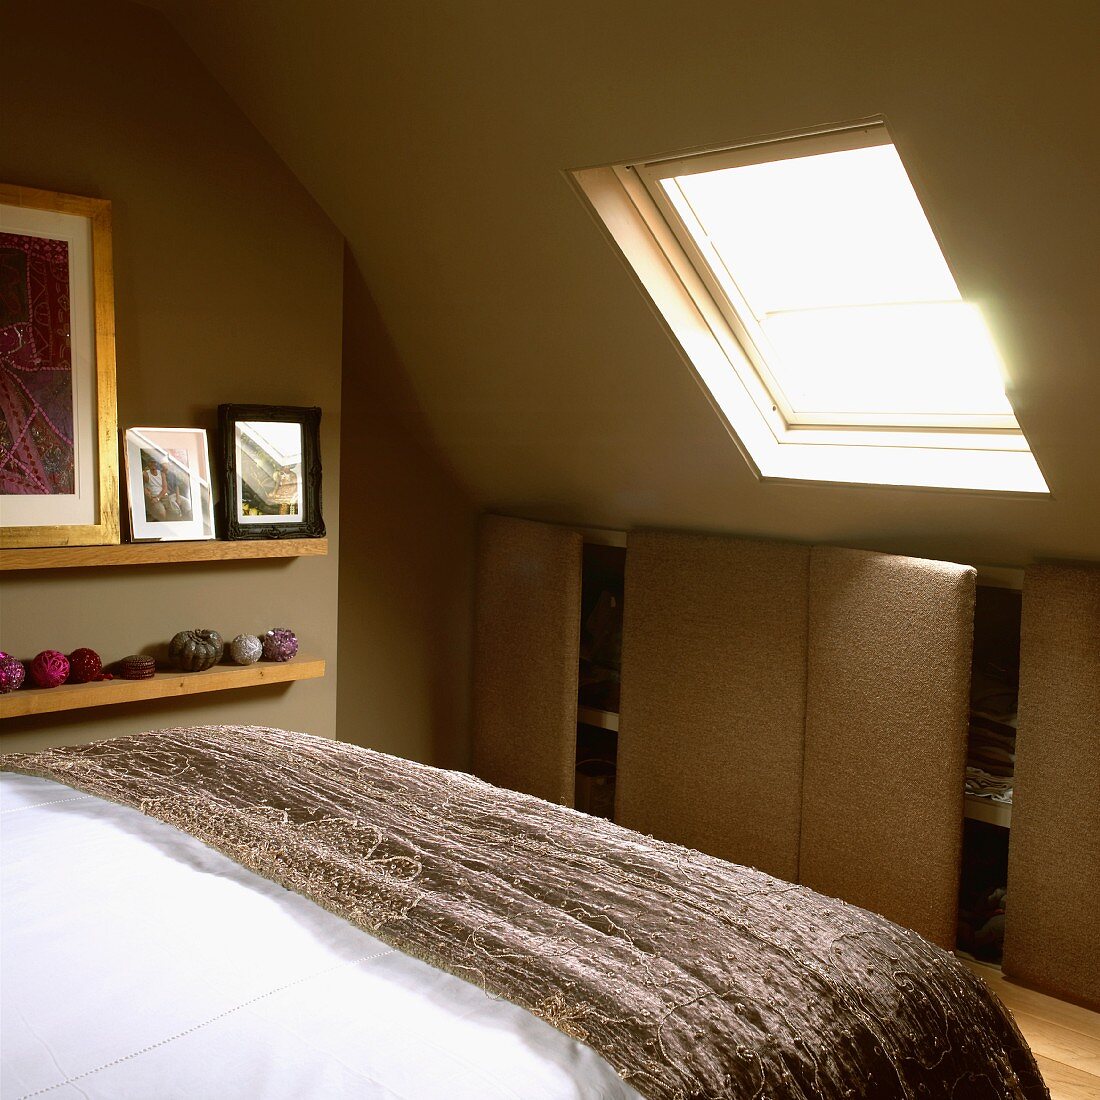 Schlafzimmer im Dachgeschoss mit grünen Wänden, stoffbezogenem Einbauschrank, Bett und Dachfenster